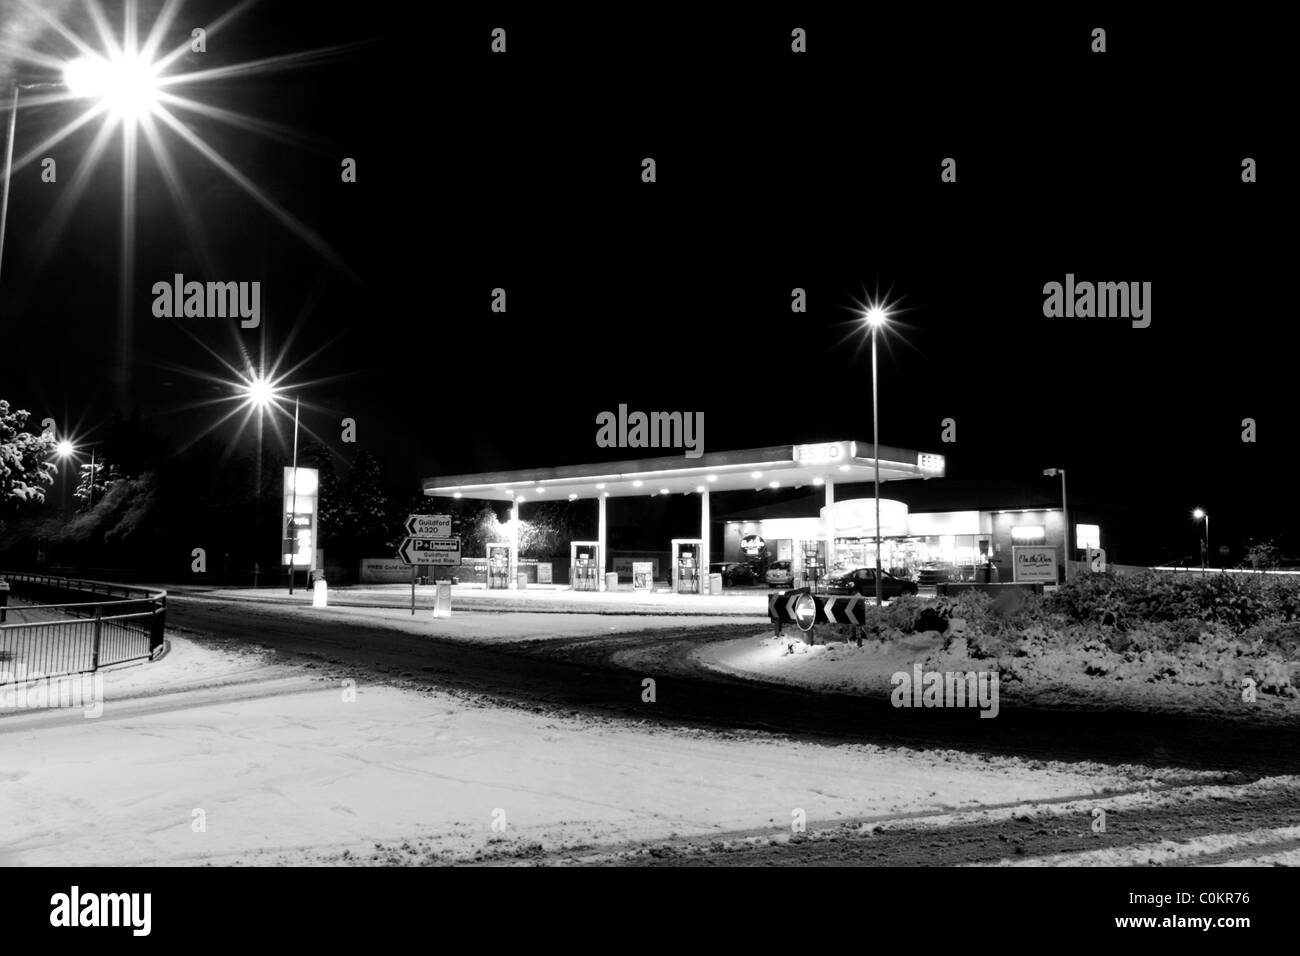 Une station essence à proximité d'un rond-point sur une route couverte de neige éclairé par des lumières de rue dans le noir. Banque D'Images